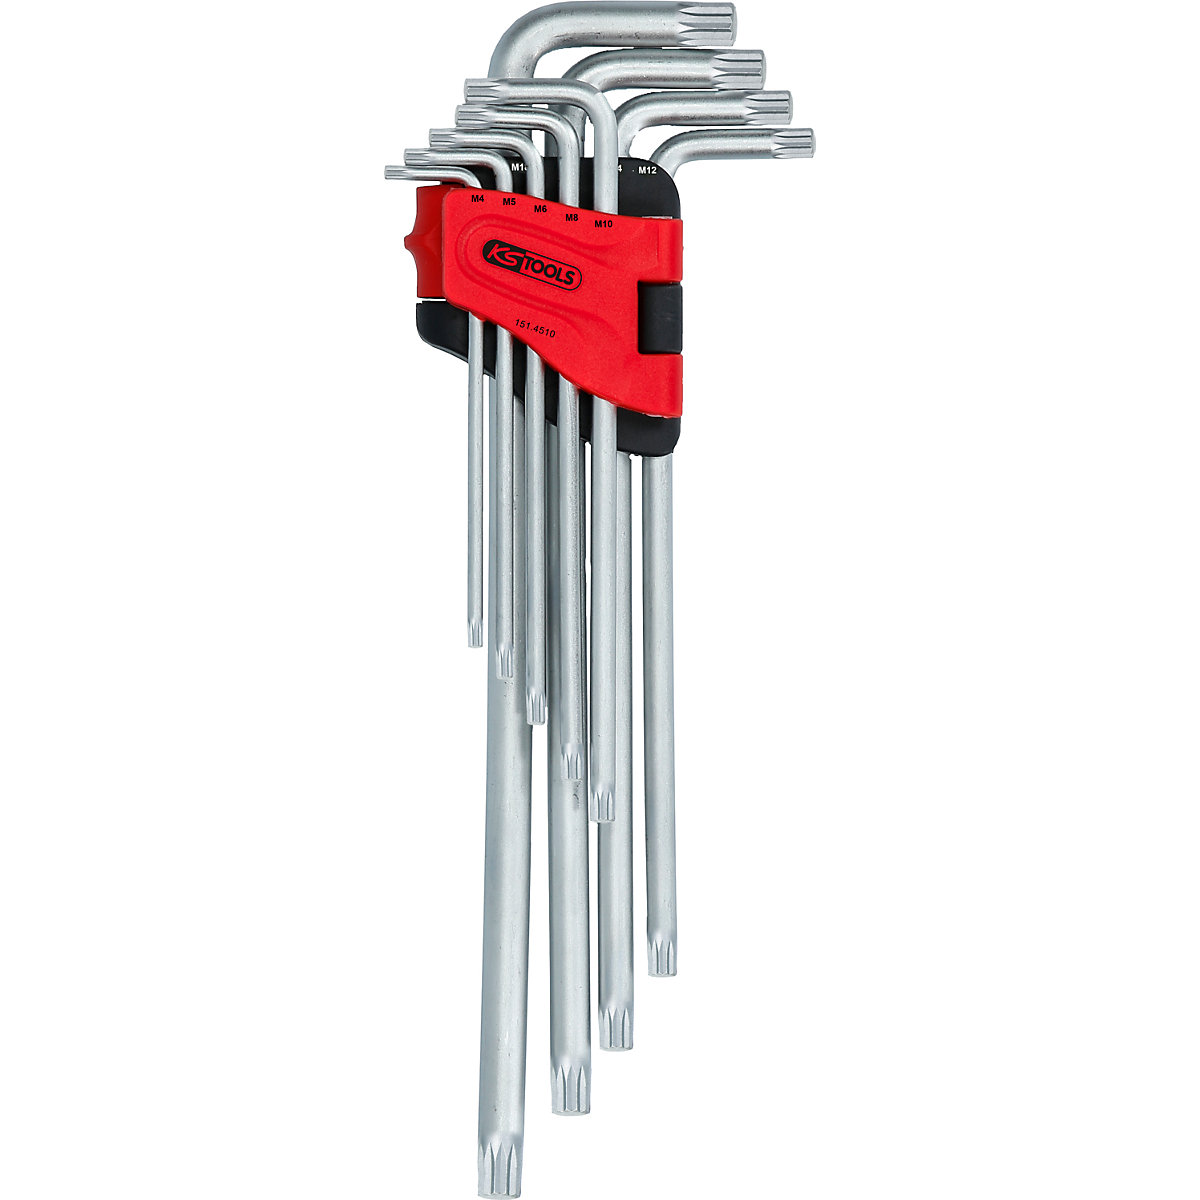 Angle key wrench set, XL - KS Tools